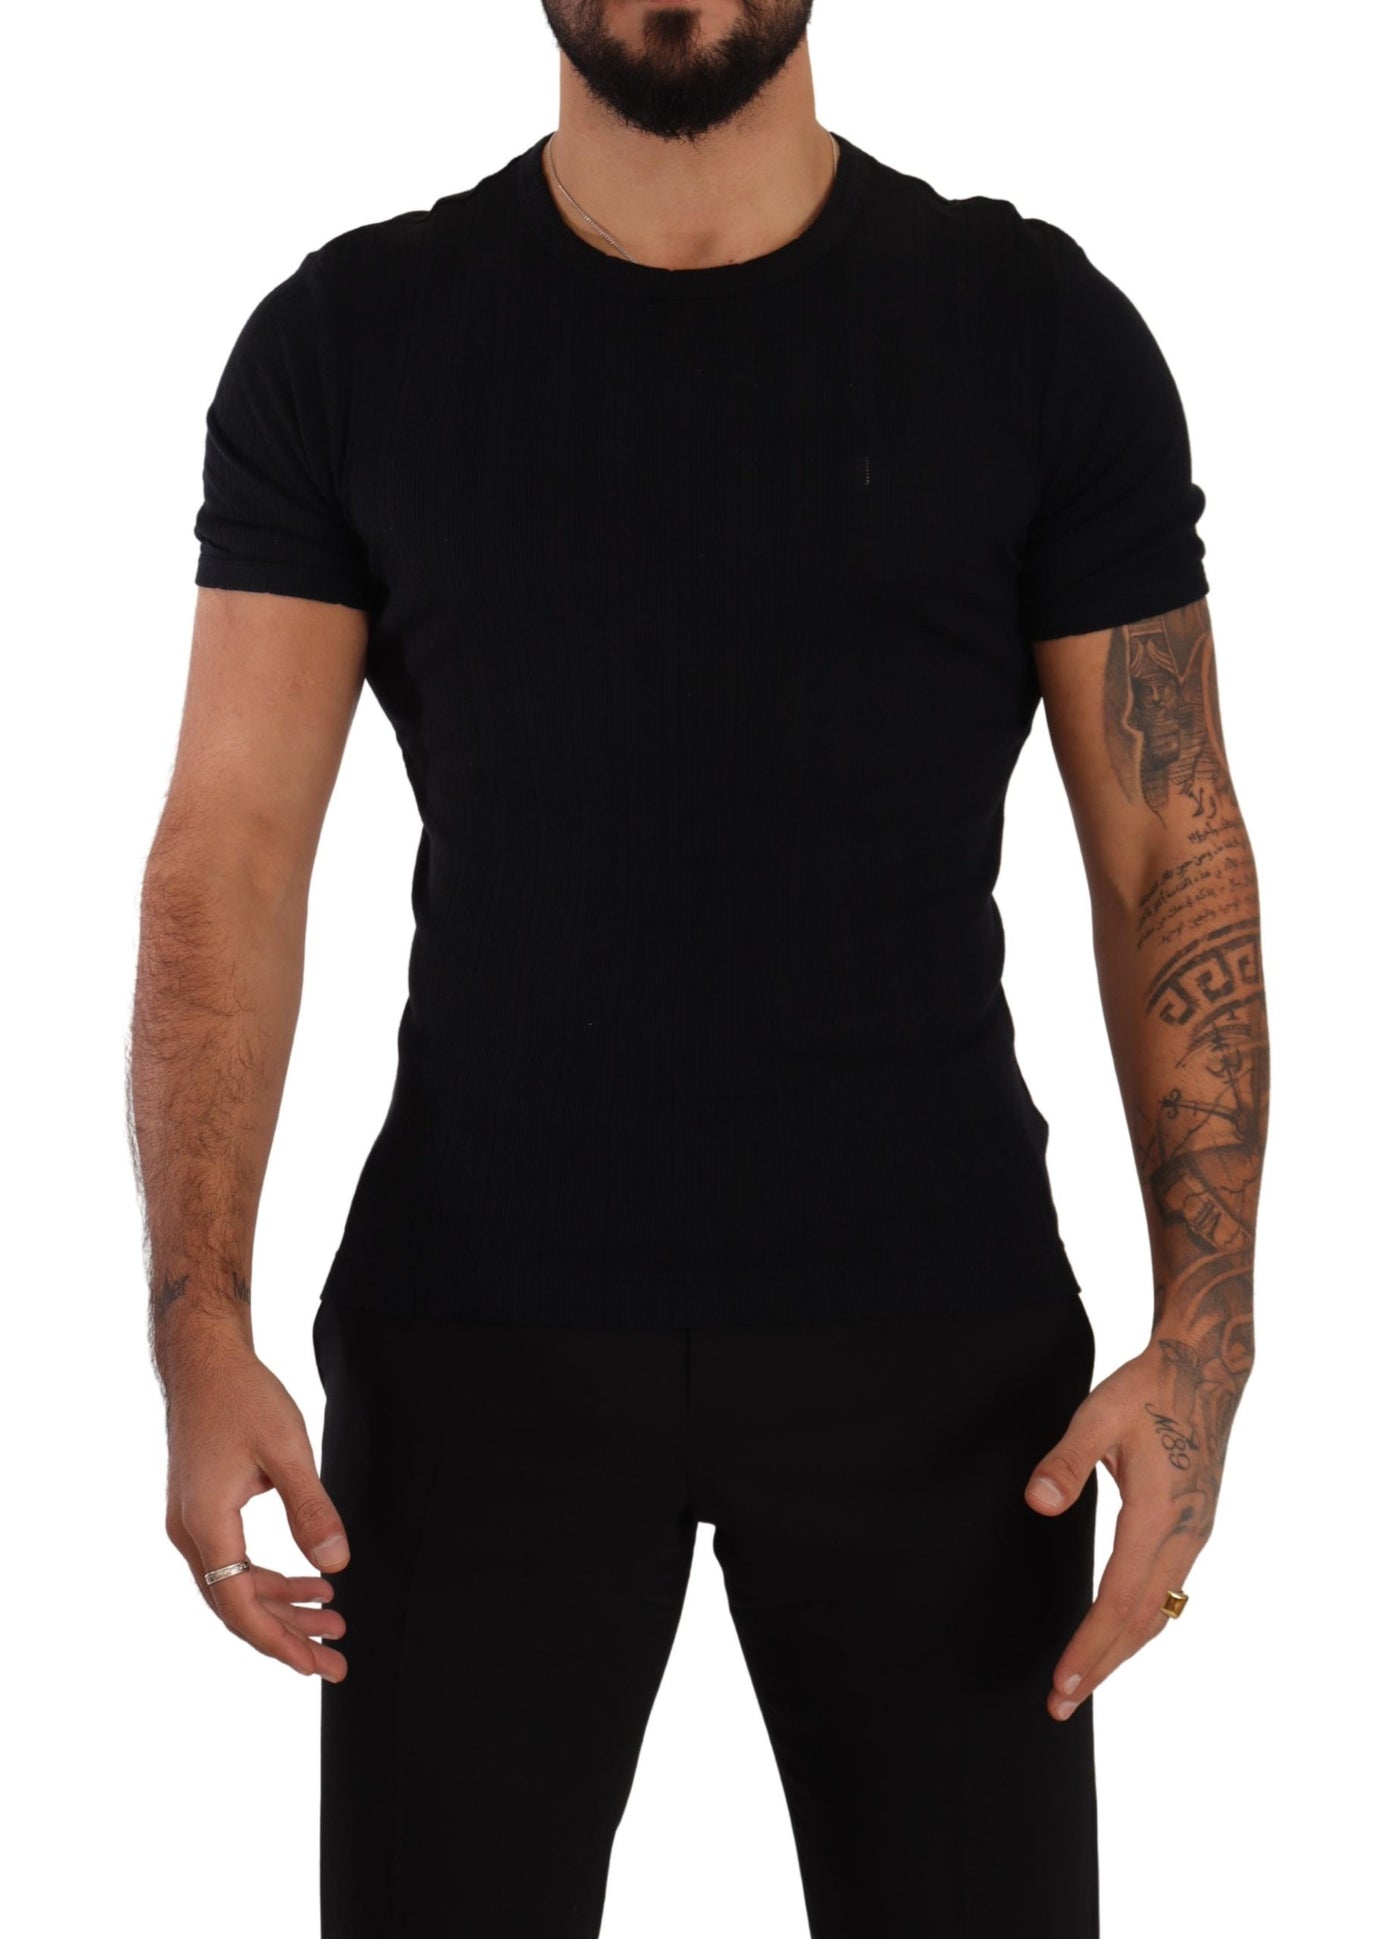 Black Cotton Stretch T-shirt Underwear